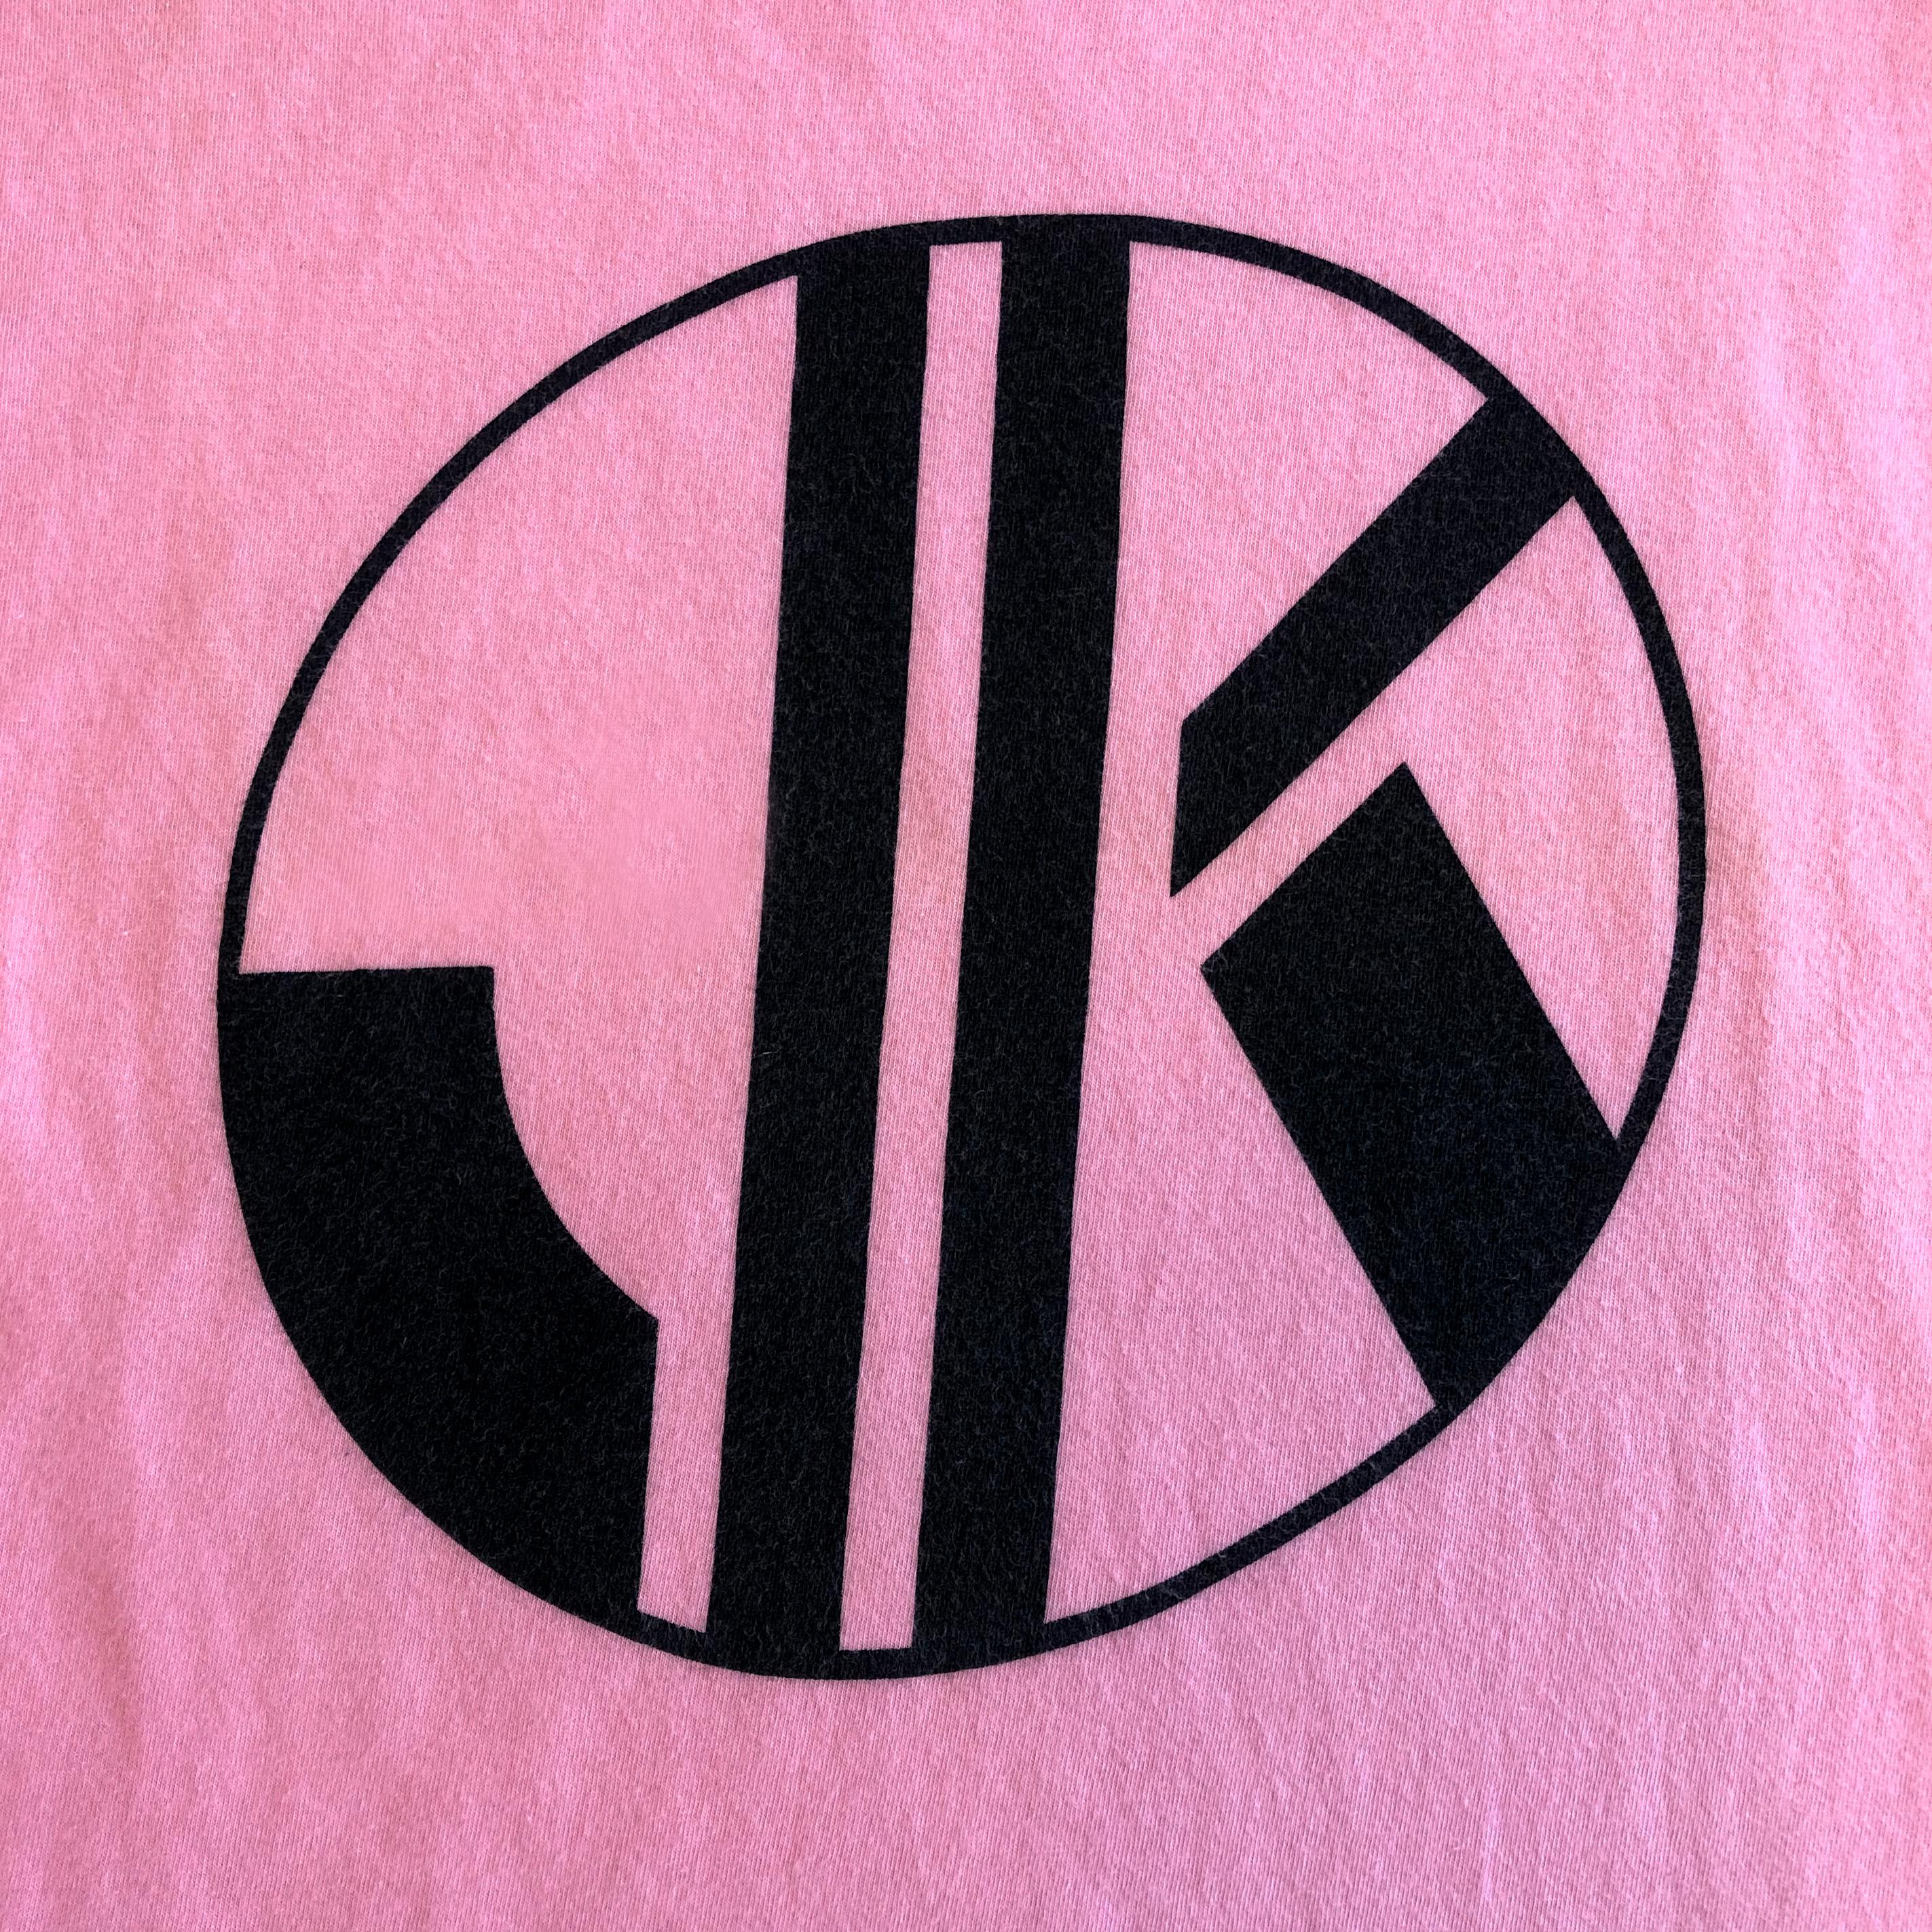 Product Details: Rare - Krizia Jeans - 1980s Vintage - T-Shirt - Cap Sleeve Detail - Ribbed Neckline - Black JK Motif Front T - Plain Back T
Label: Krizia - Jeans
Era: 1980s Vintage
Fabric Content: Pink Cotton / Black Motif
Size: M
Bust Circ